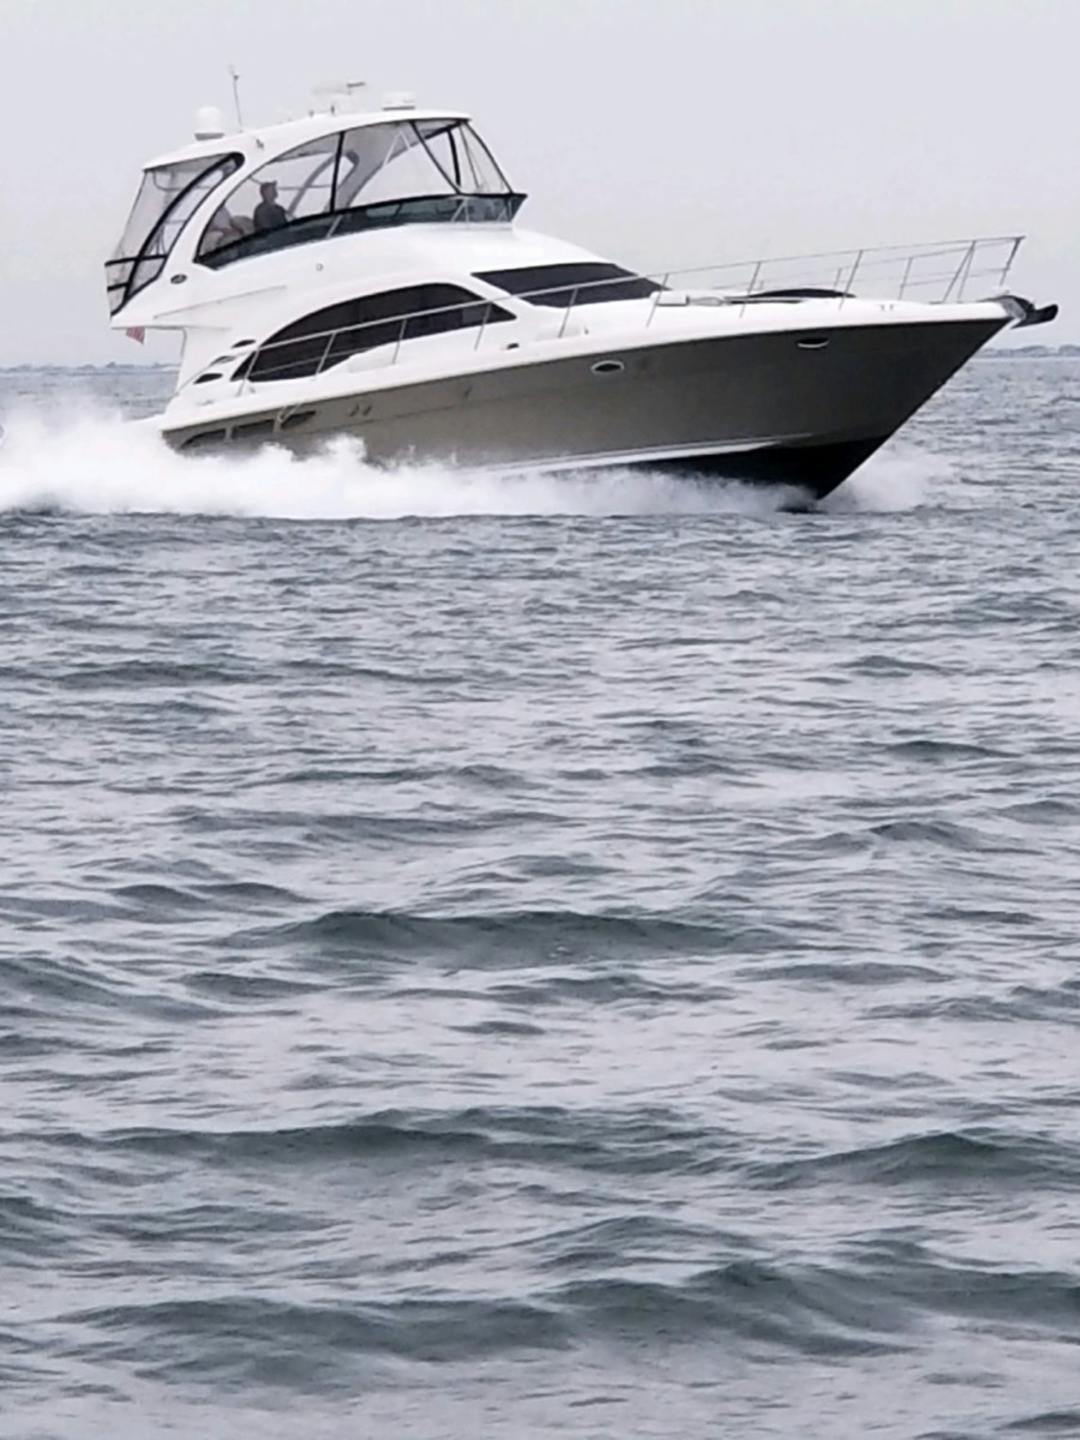 56 Sea Ray luxury charter yacht - 56 Hazel Court, Brooklyn, NY, USA